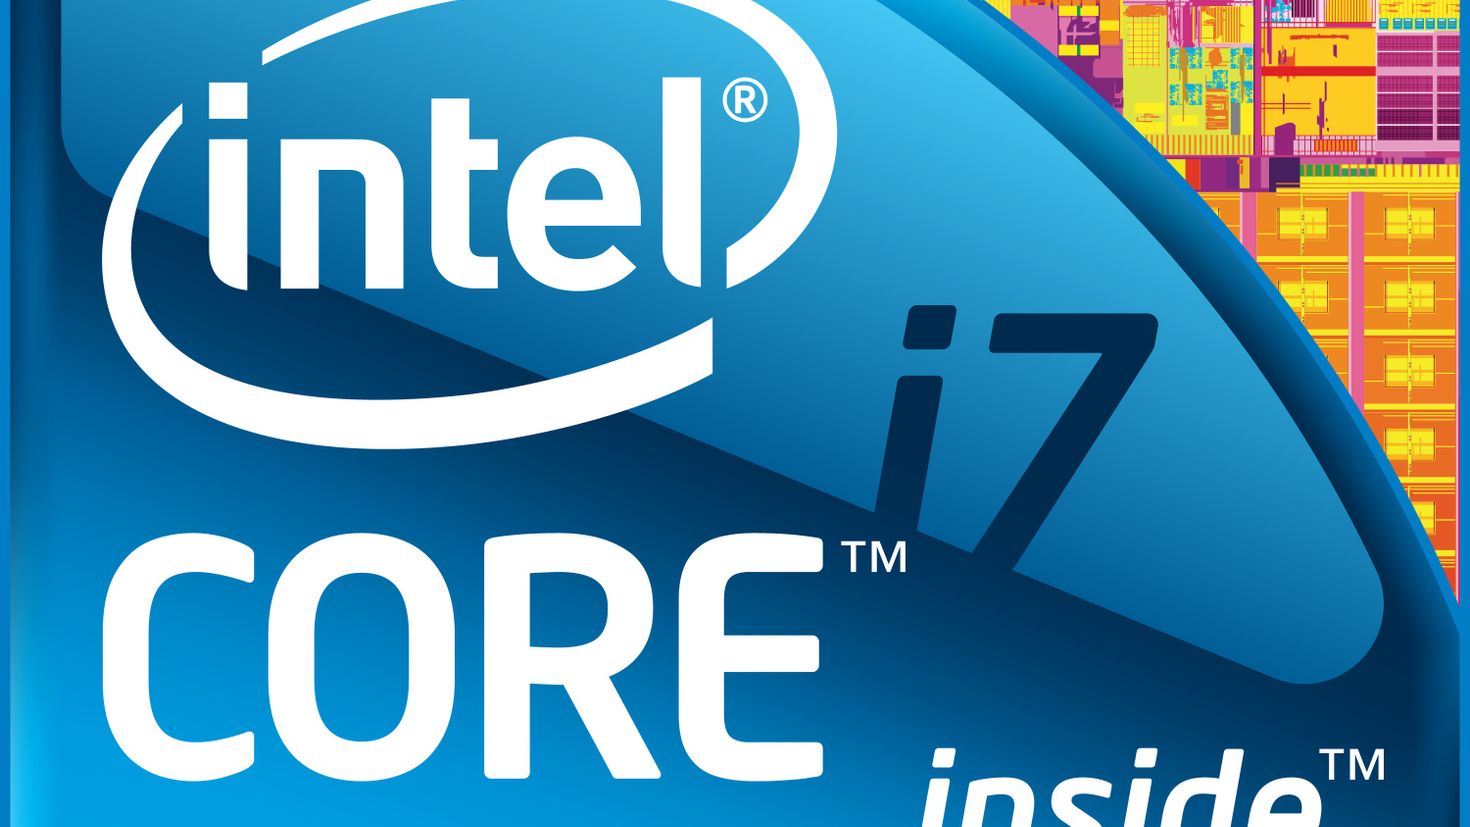 Технологии интел. Intel Core i3 logo. Intel Xeon logo. Intel Core i3 inside. Intel Core i5 logo.